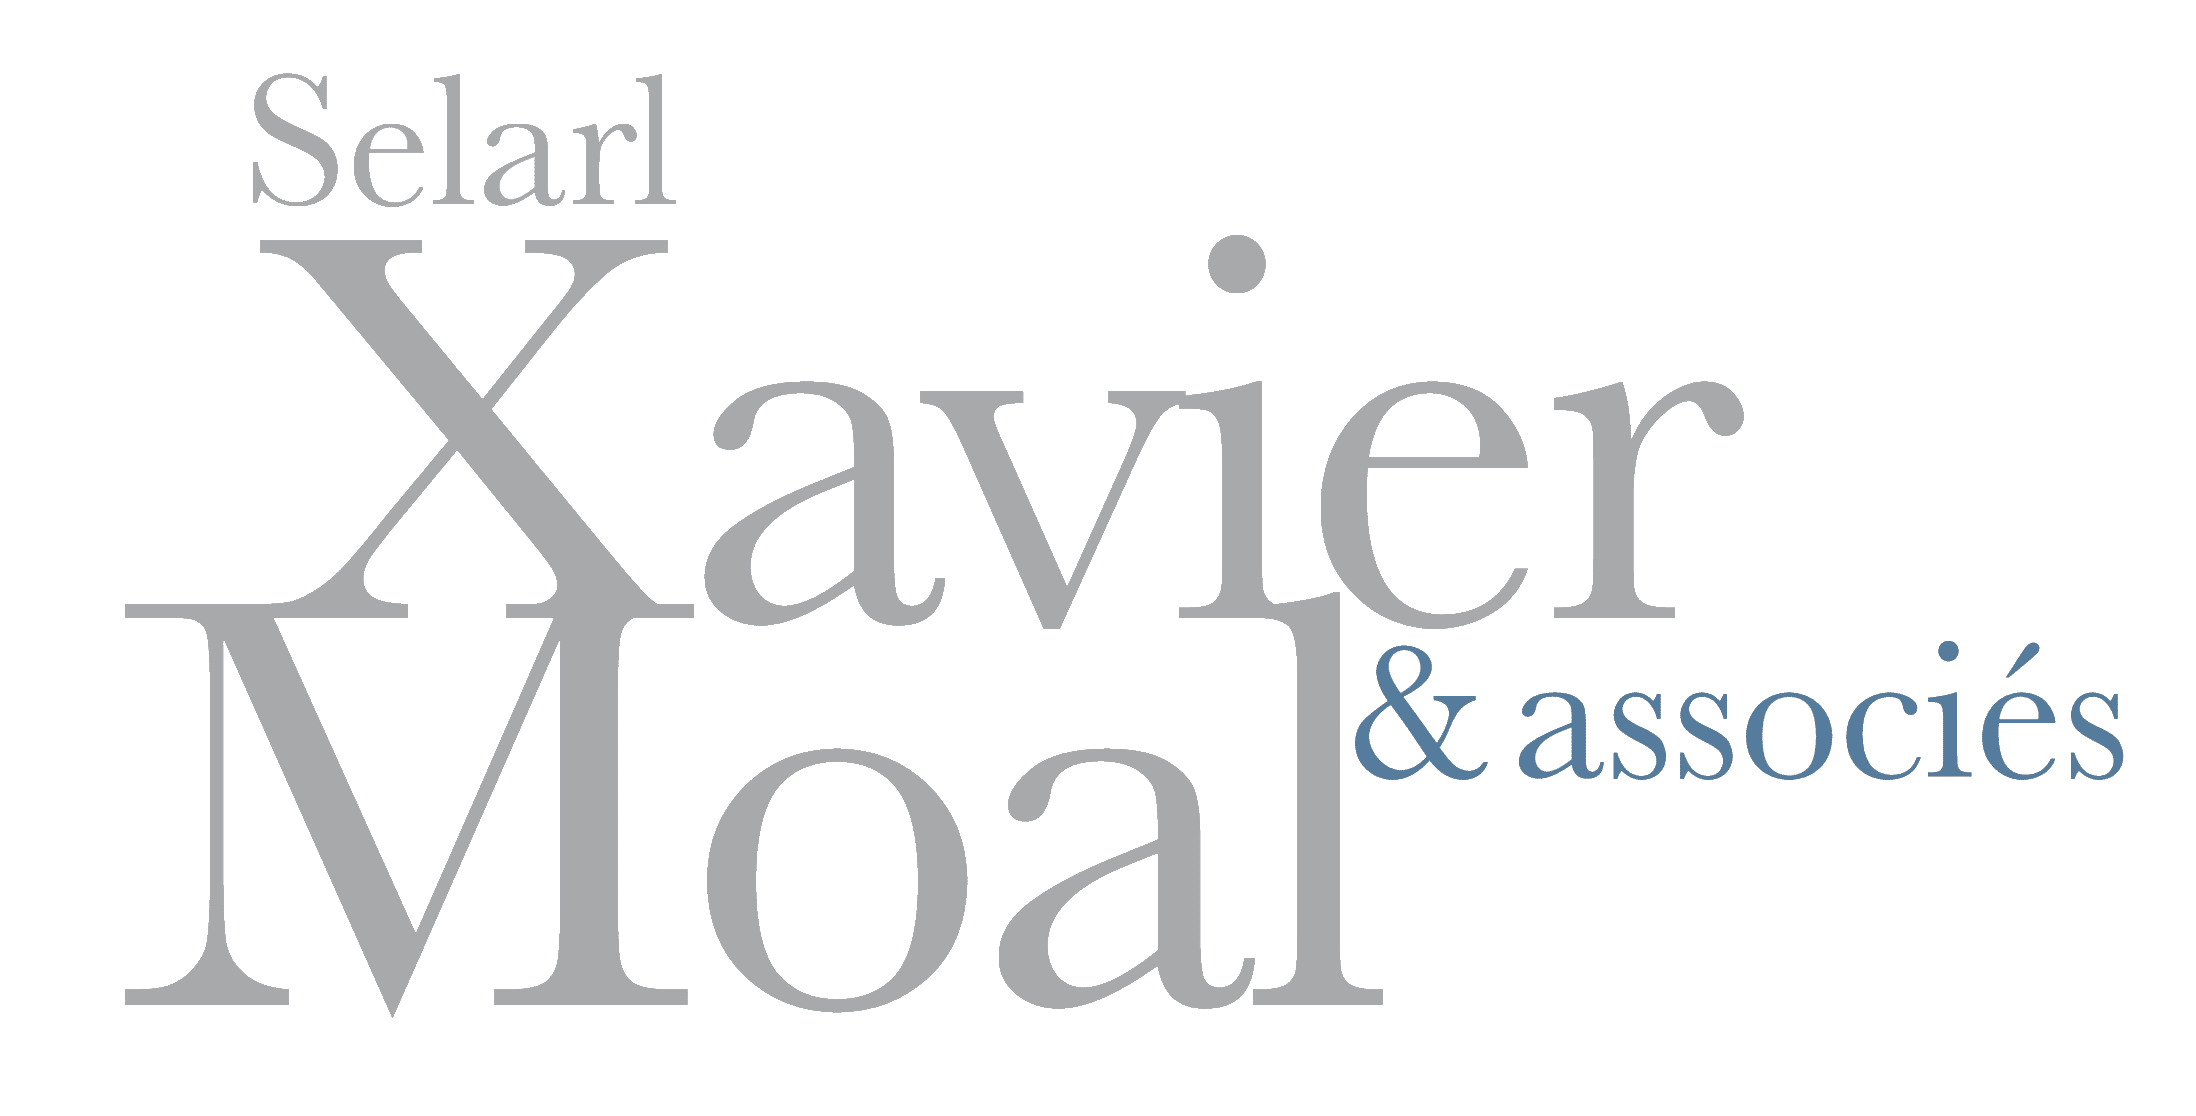 Cabinet Xavier Moal & Associés